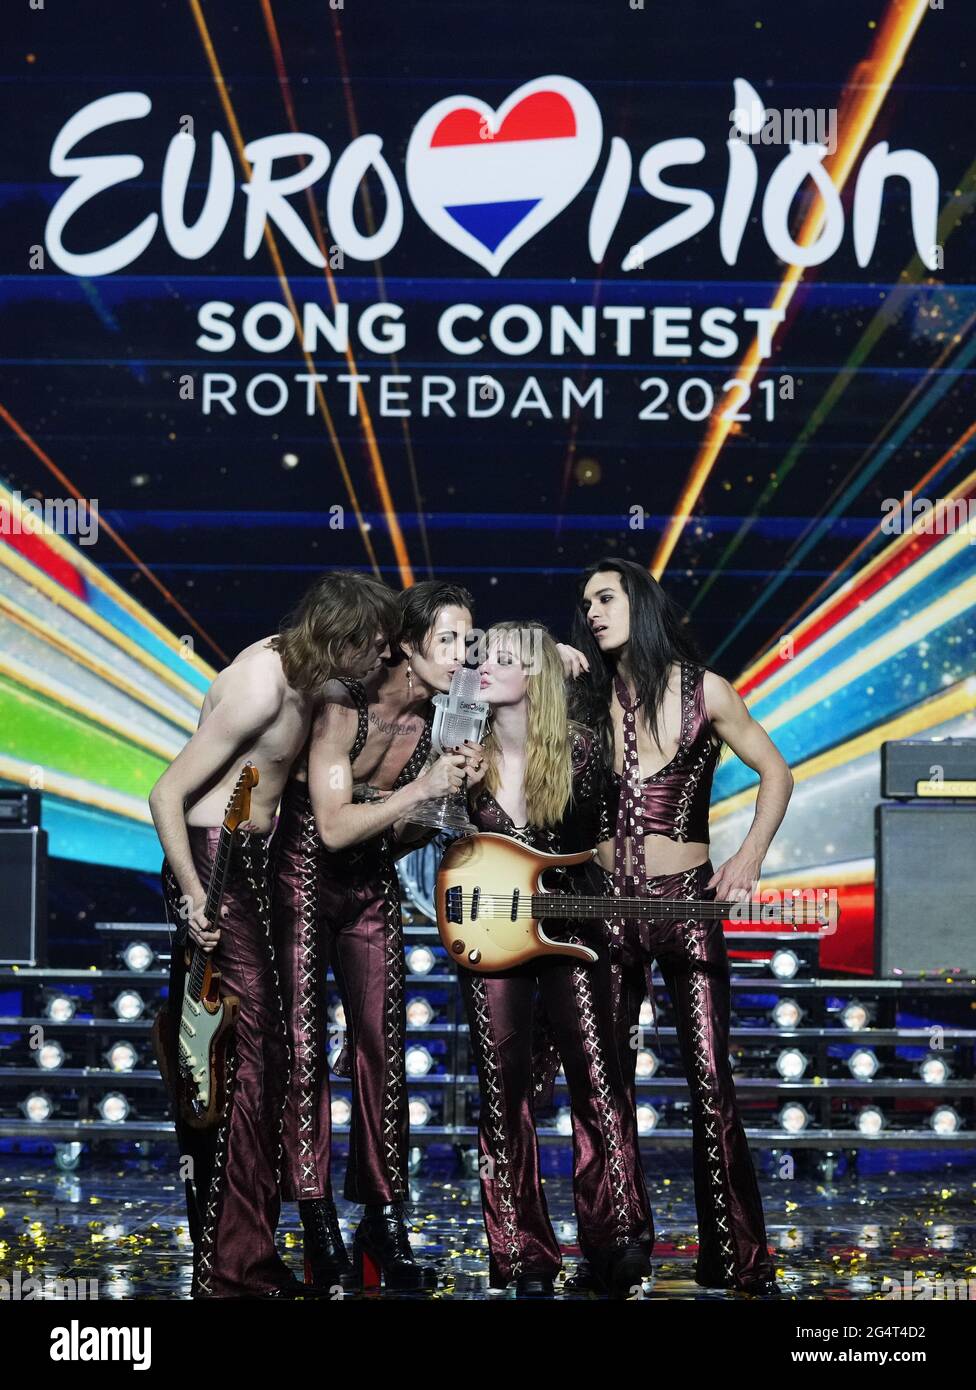 Rotterdam - gagnant Euro Vision Songcontest 2021 - Maneskin combinaison Italie où: Rotterdam, pays-Bas quand: 23 mai 2021 crédit: Bruno Press/WENN **disponible uniquement pour publication au Royaume-Uni** Banque D'Images